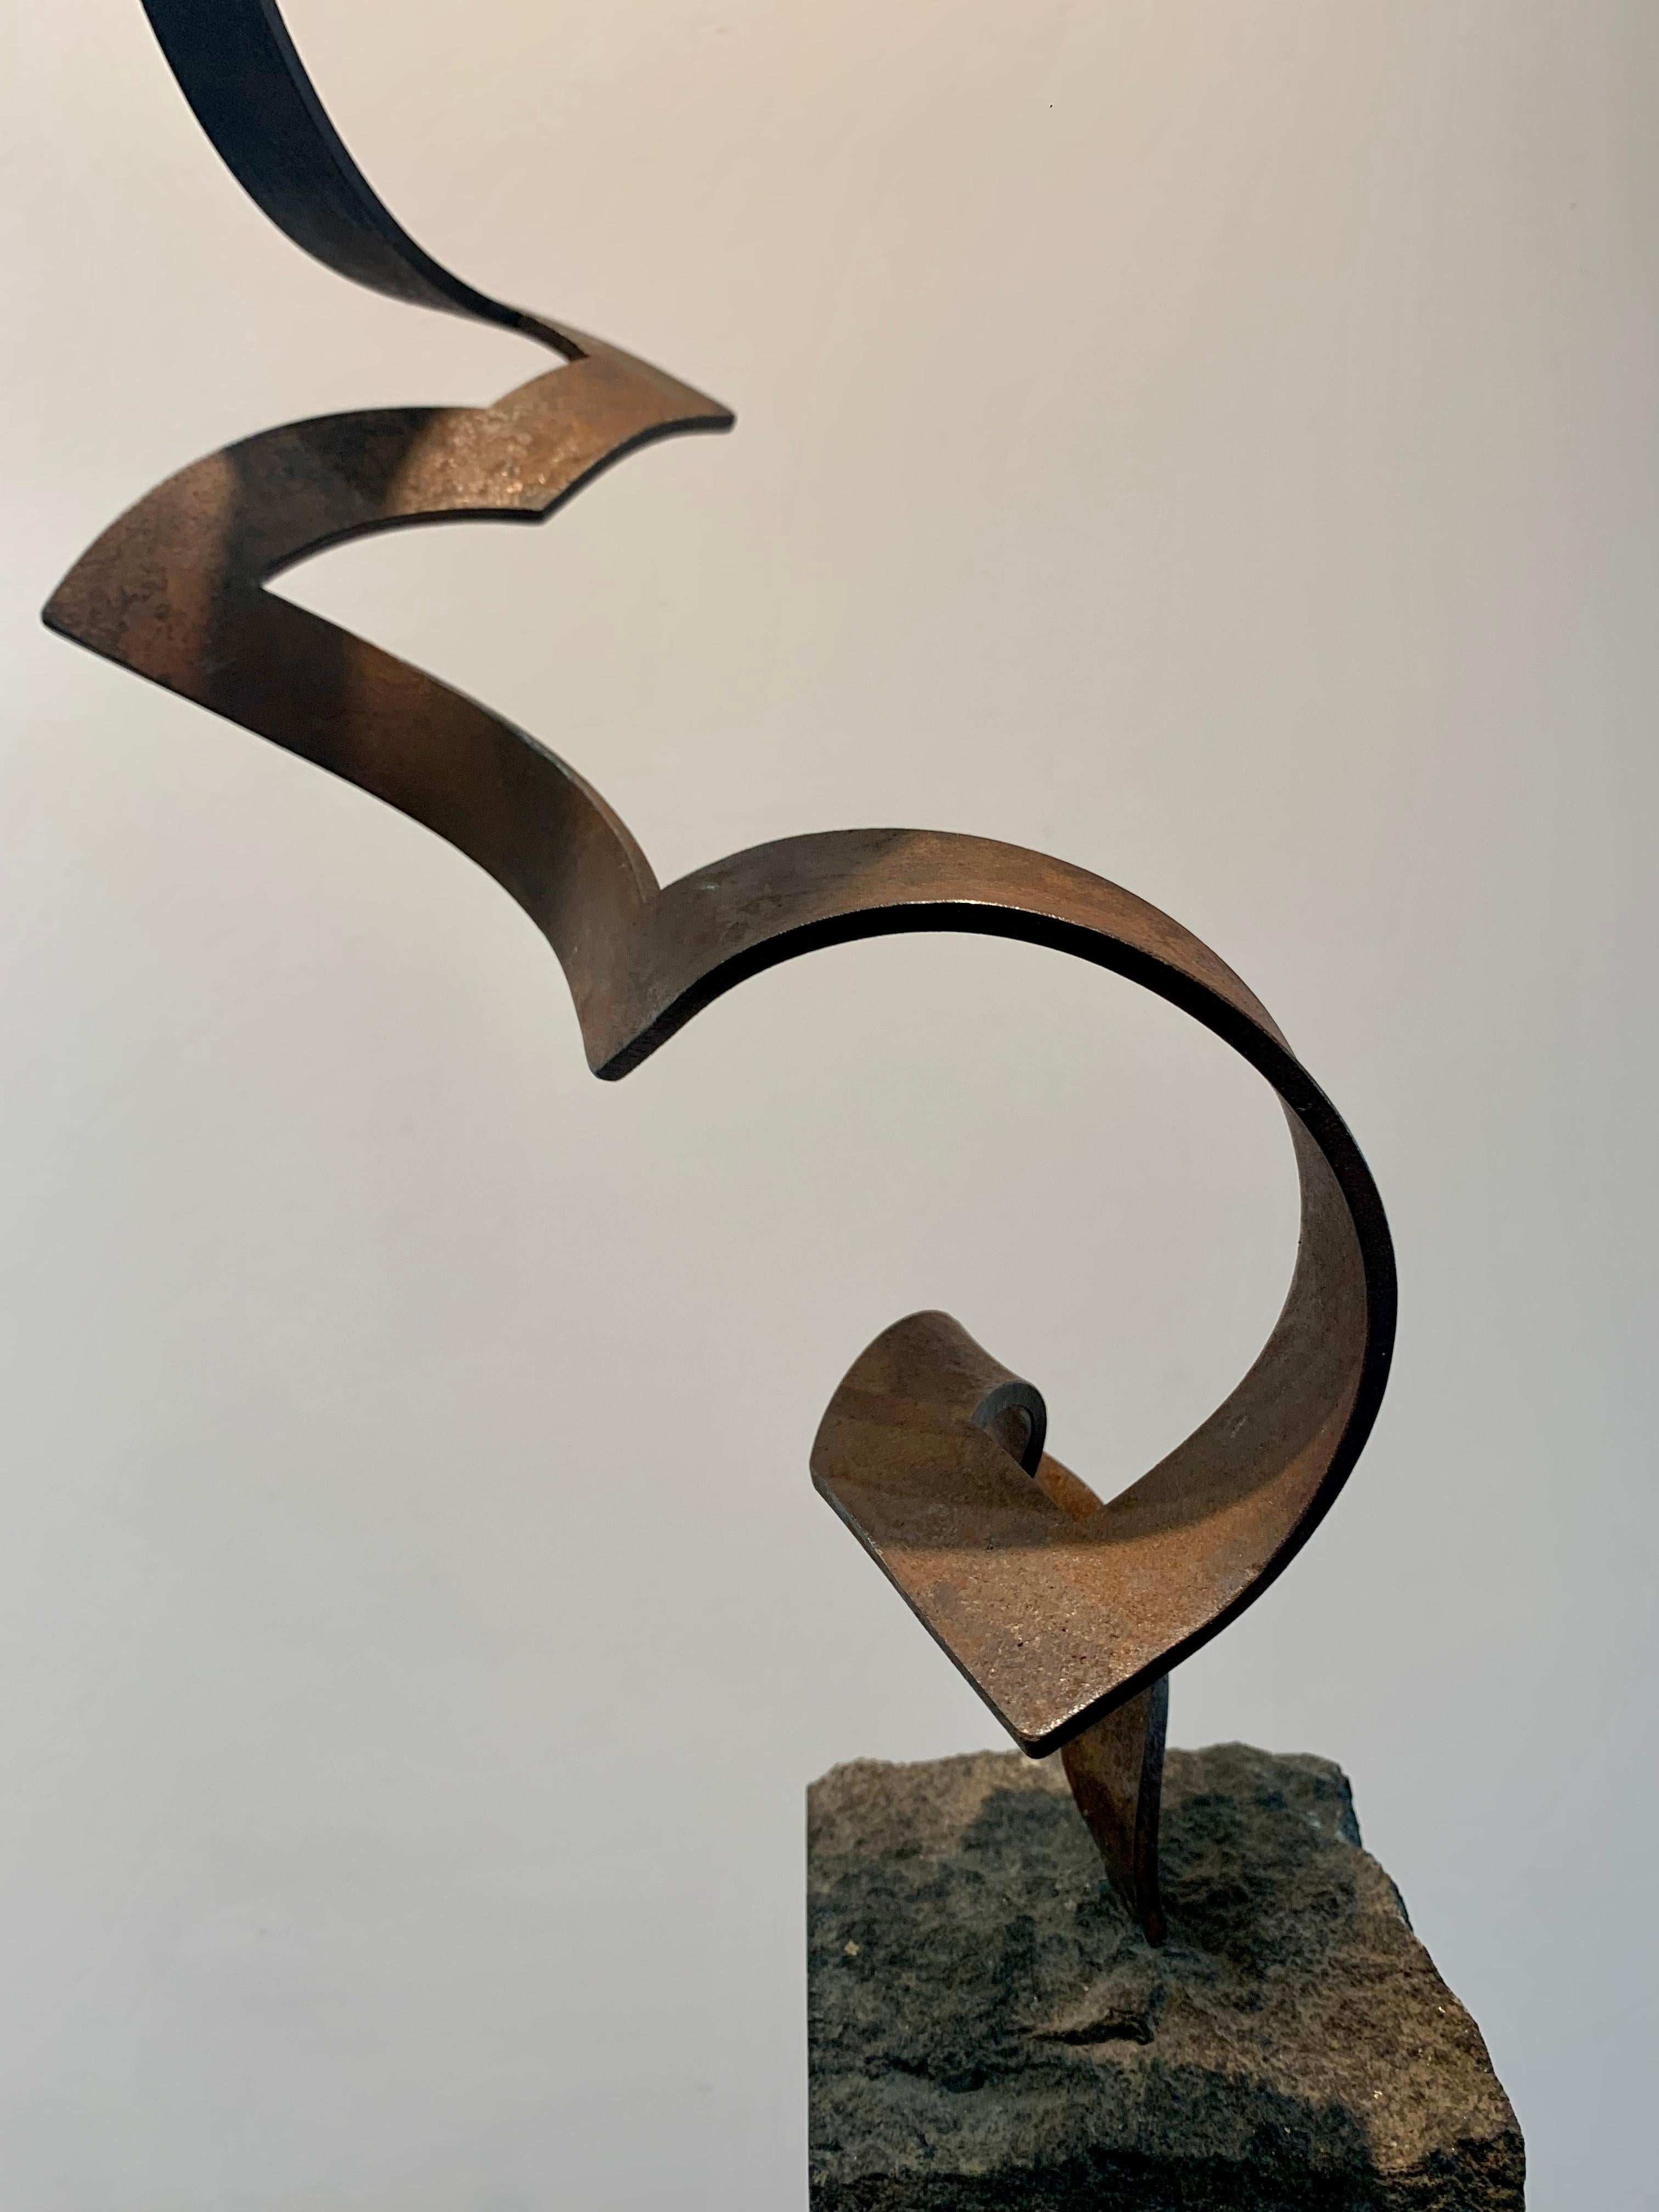 Steel Dance by Kuno Vollet Contemporary Steel Sculpture for indoor or outdoor For Sale 13